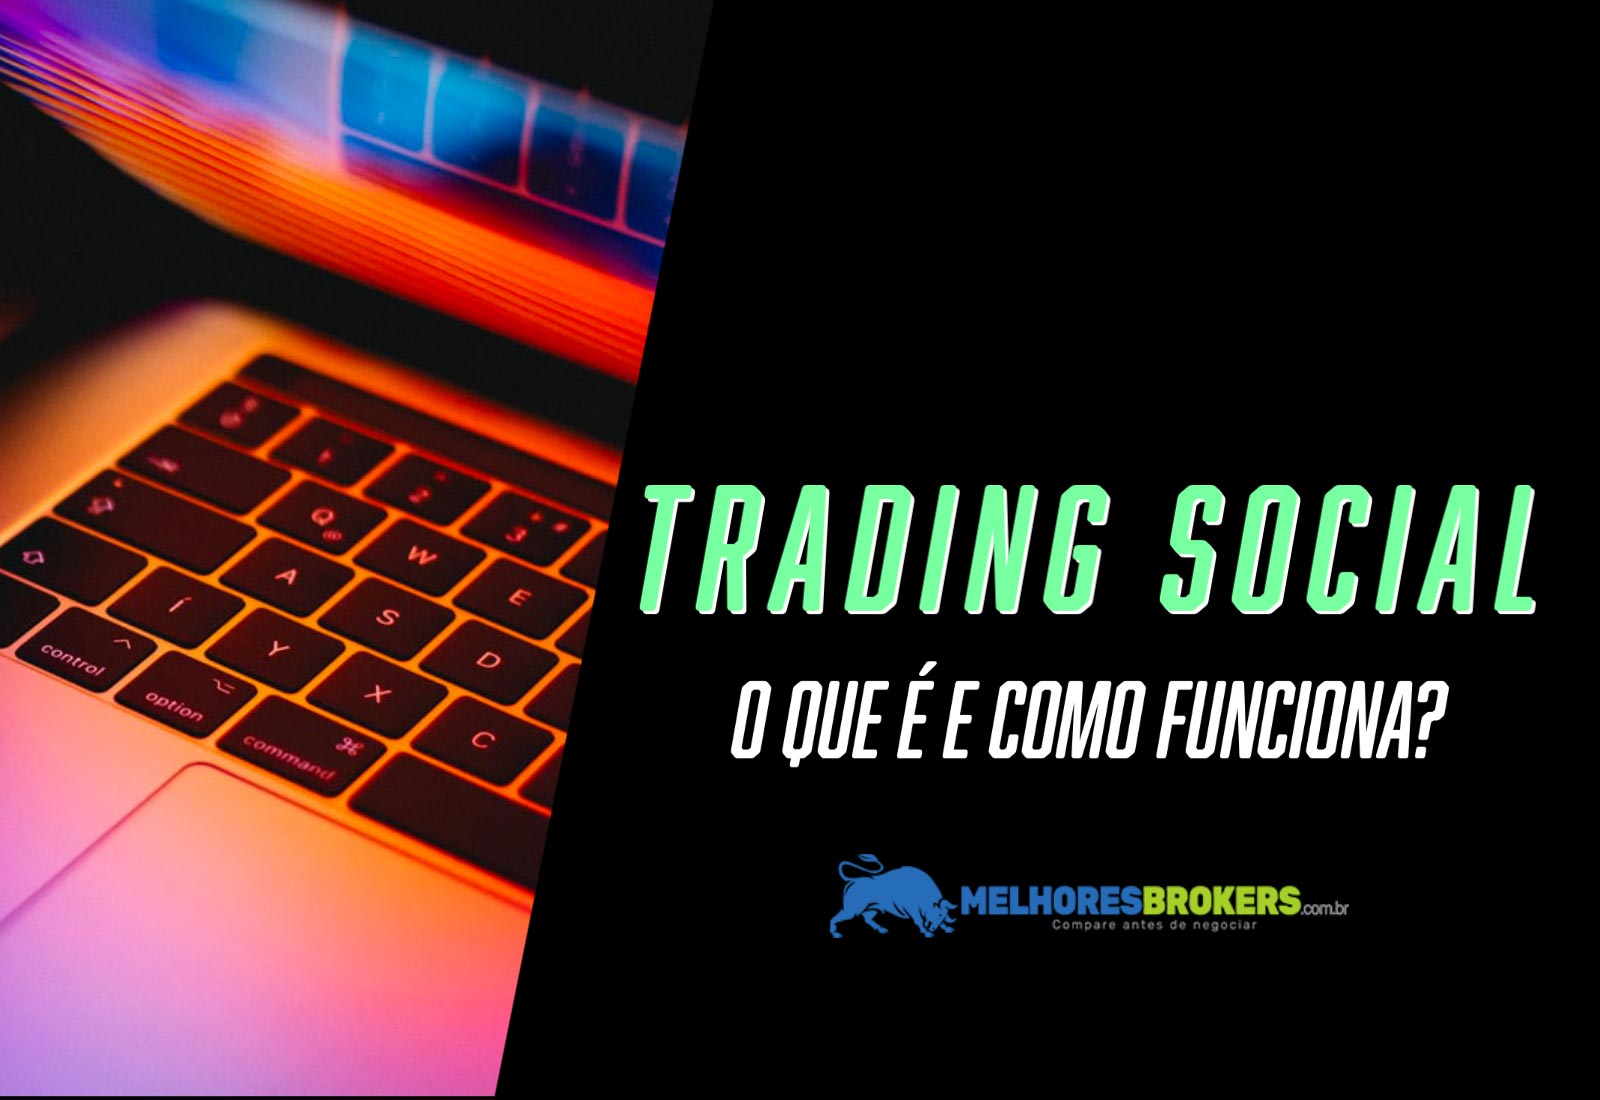 Trading Social: o que é e como funciona?